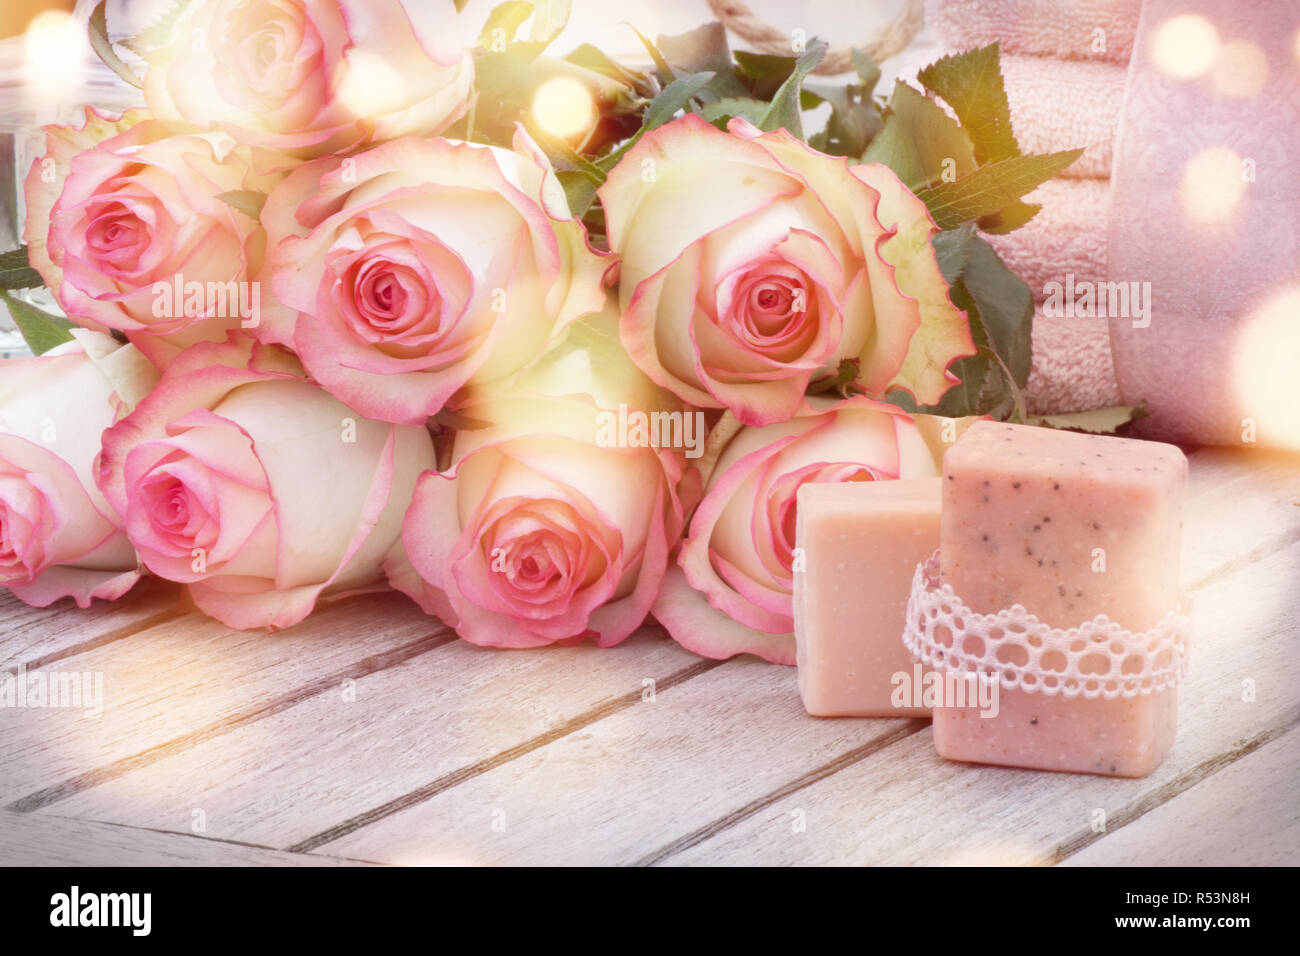 Spa bodegón con jabones artesanales y rosas Foto de stock